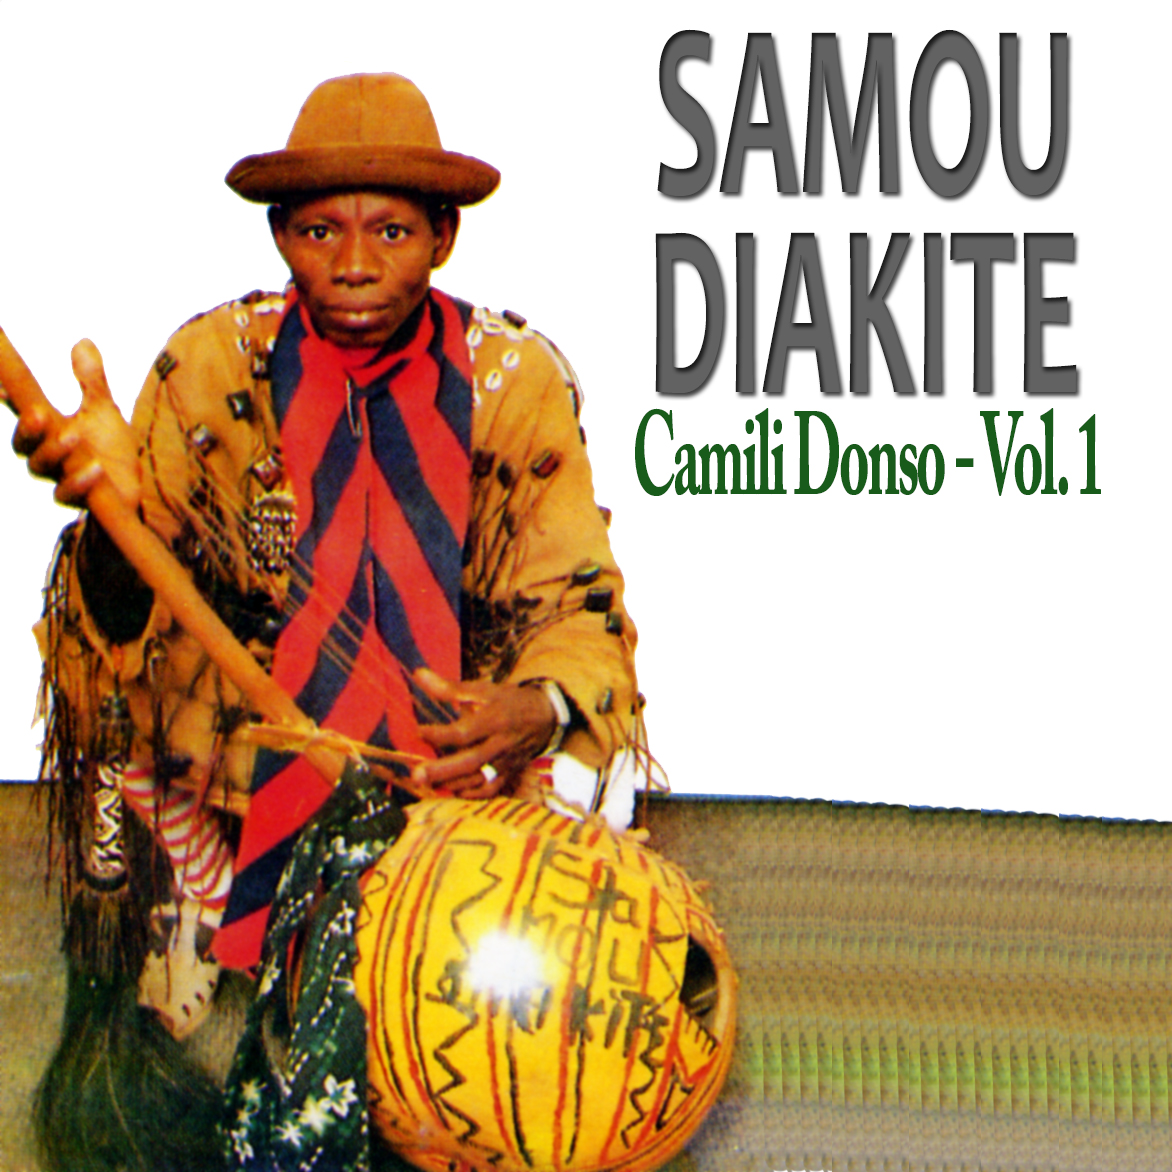 Sambou  Diakité Album: Camili donso vol 1 - (2 Tracks)